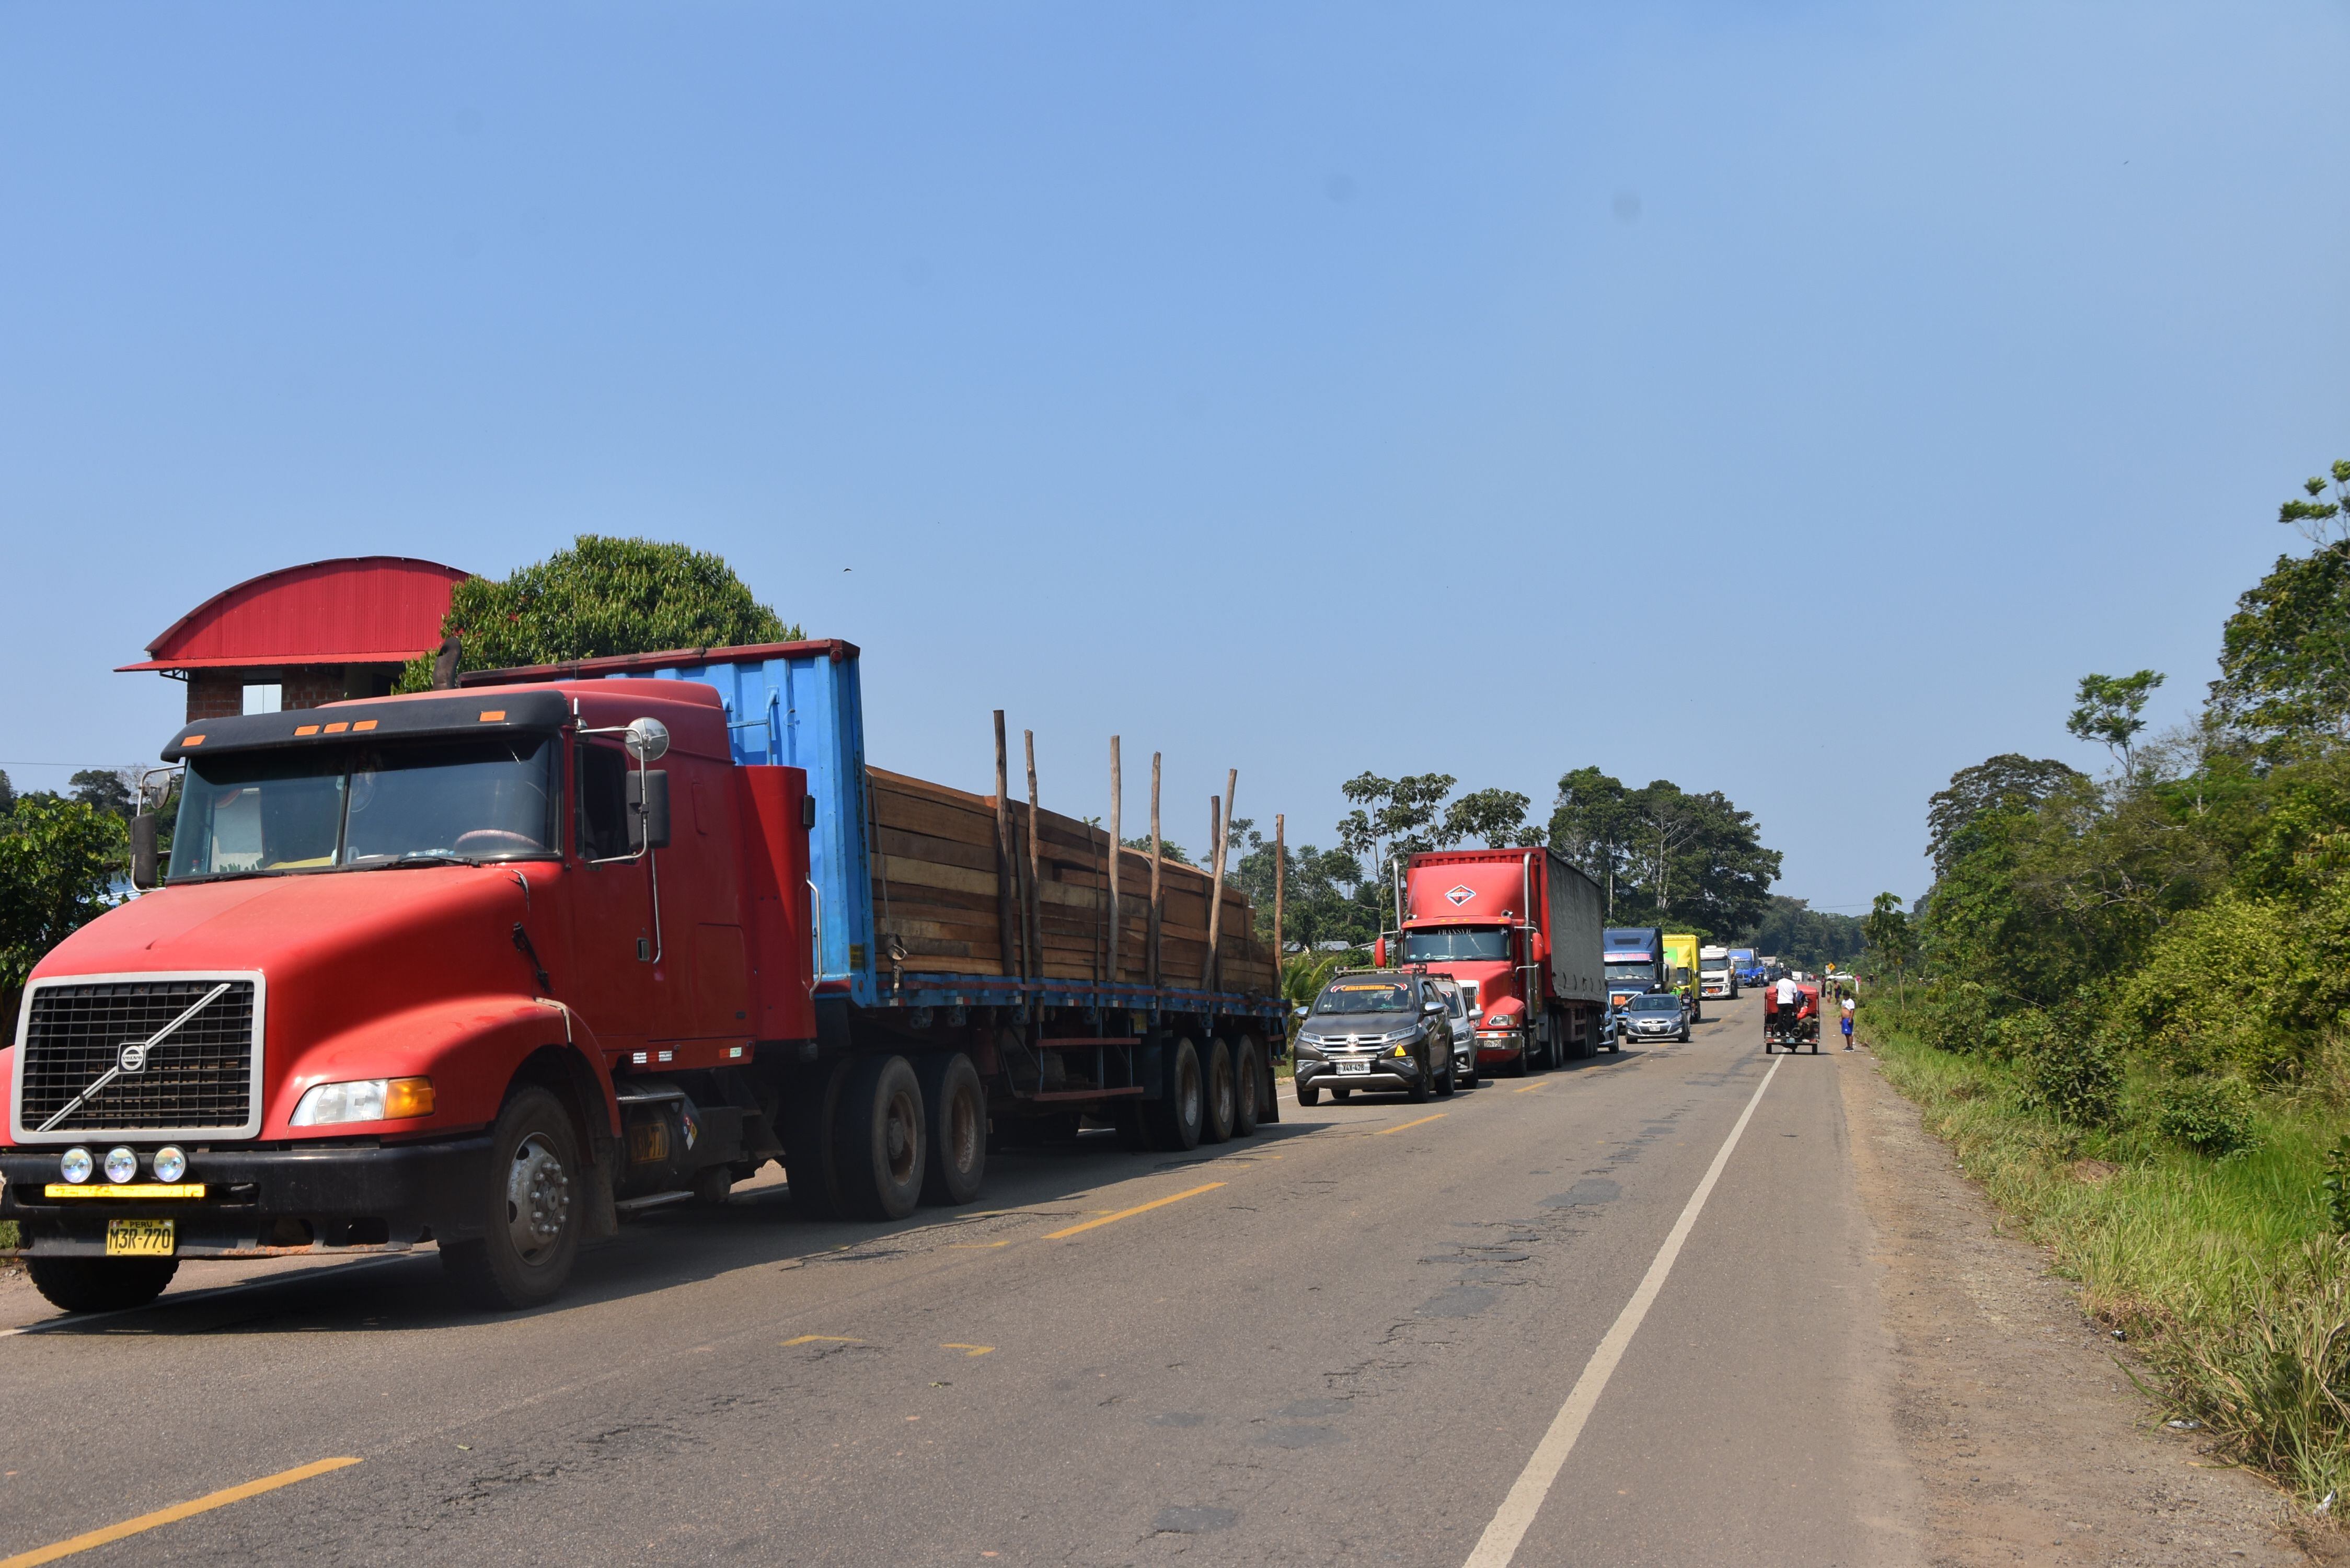 Mineros y comerciantes mantienen bloqueada la vía Interoceánica. Buses y camiones permanecen varados. (Foto: Manuel Calloquispe)